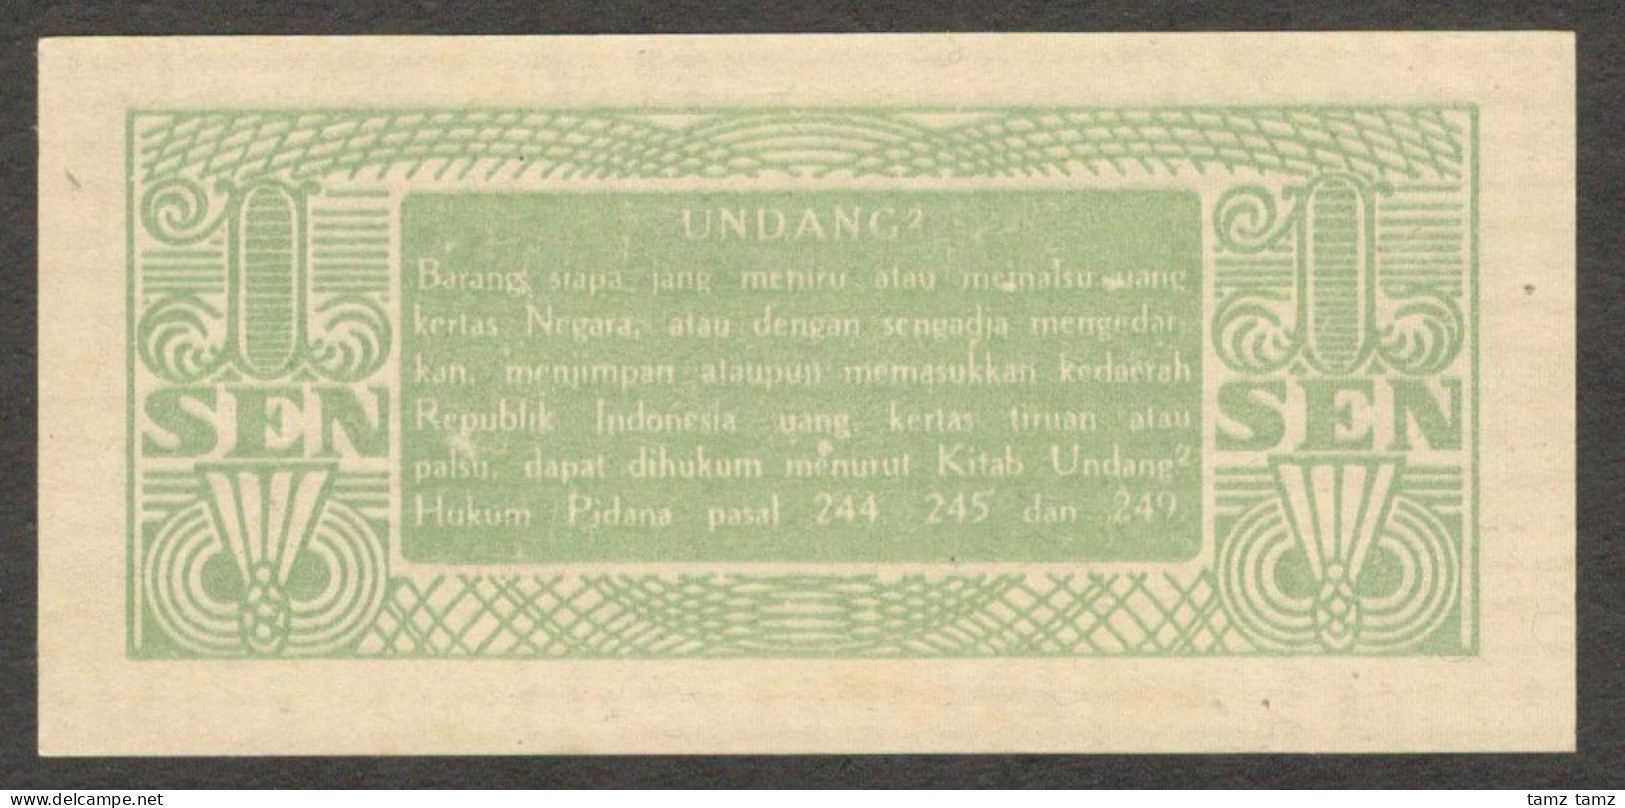 Oeang Republik Indonesia (ORI) 1 Sen 1945 P-13 UNC - Indonesia